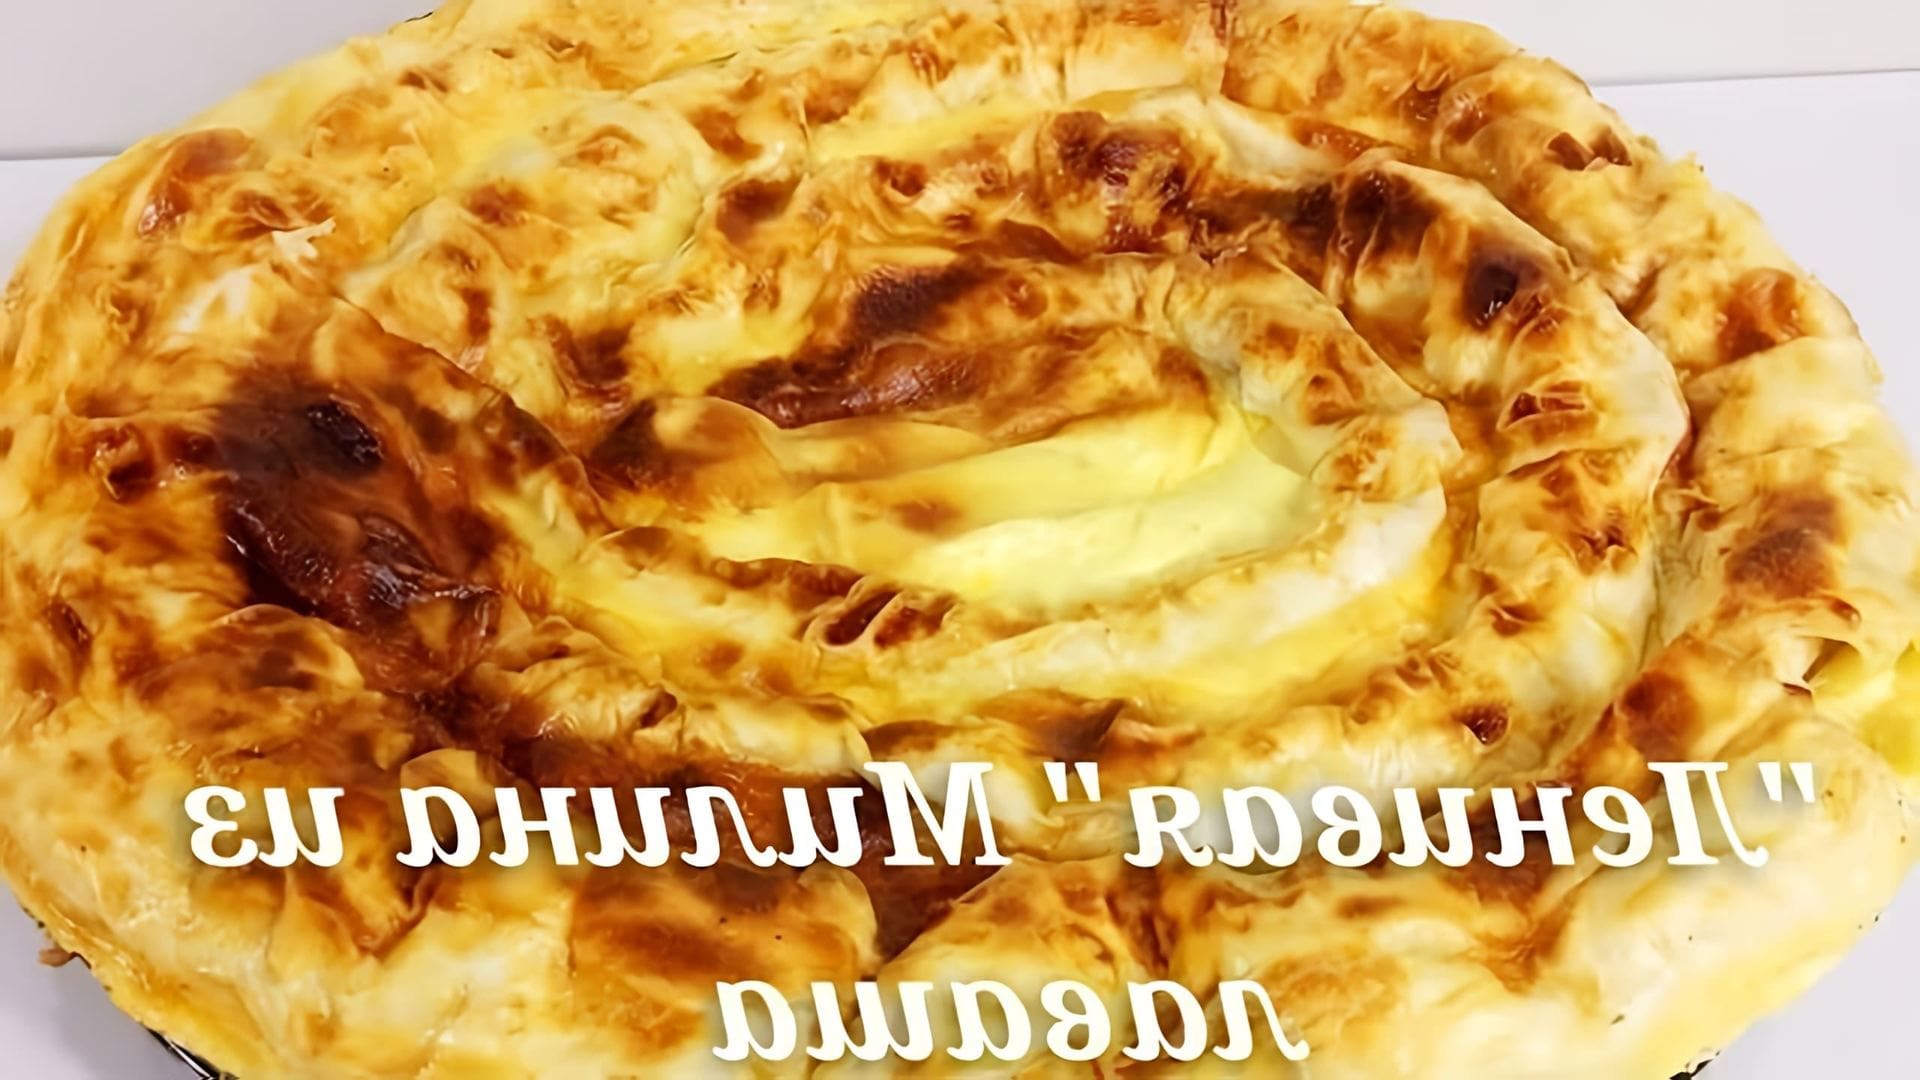 В этом видео демонстрируется рецепт болгарского пирога "Мелина", который готовится из лаваша и творога